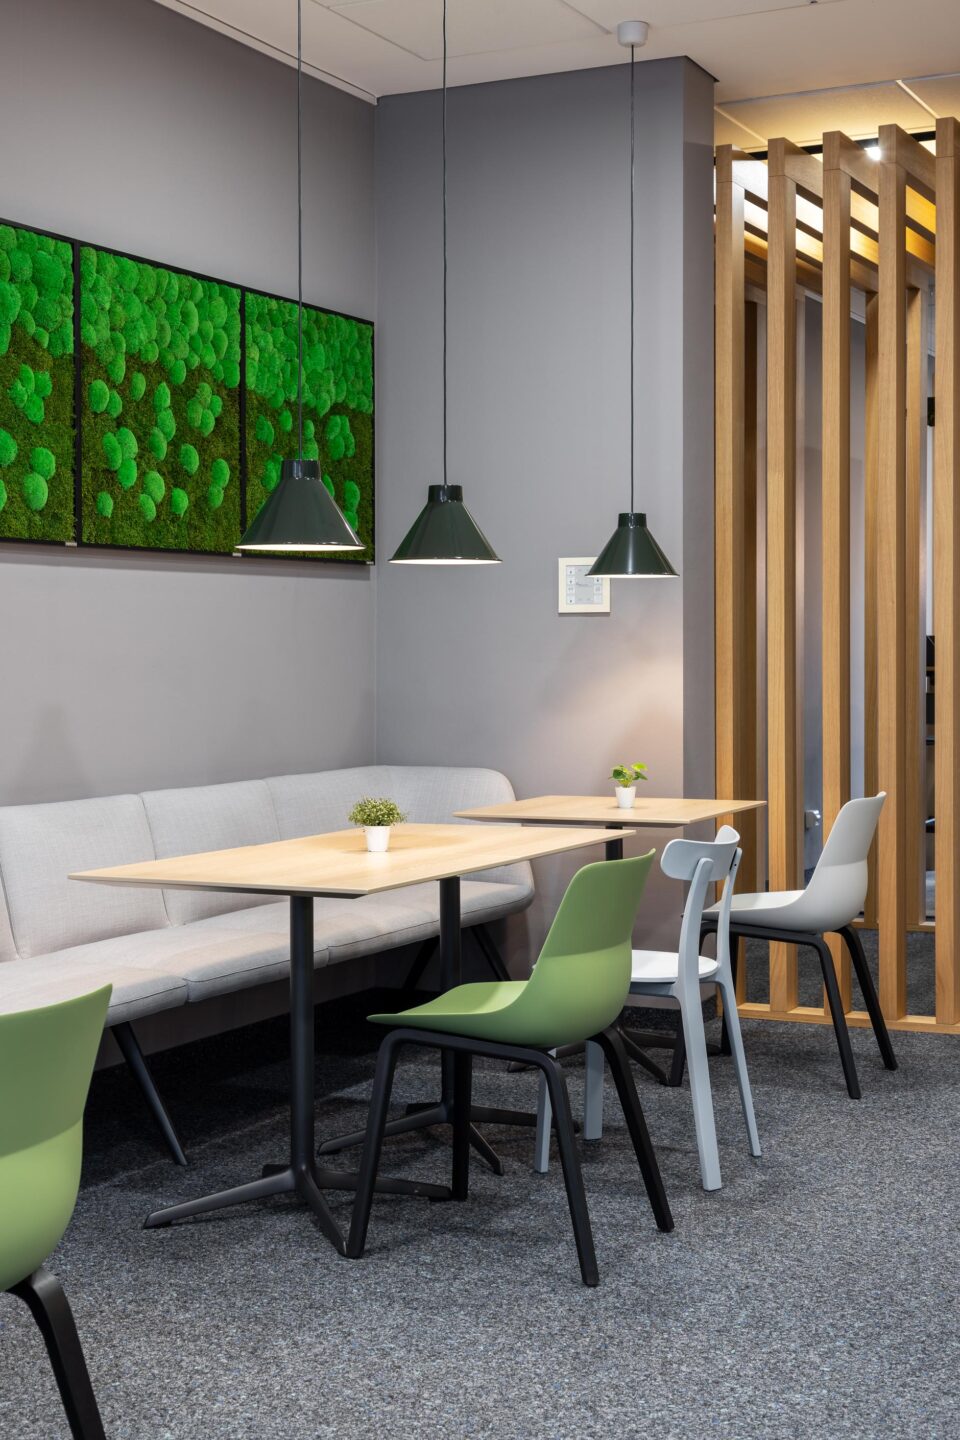 Workcafé FIZ Karlsruhe | naturfarbenes, grünes und graues Farbschema mit Holzlamellen und -tischen in der Cafeteria